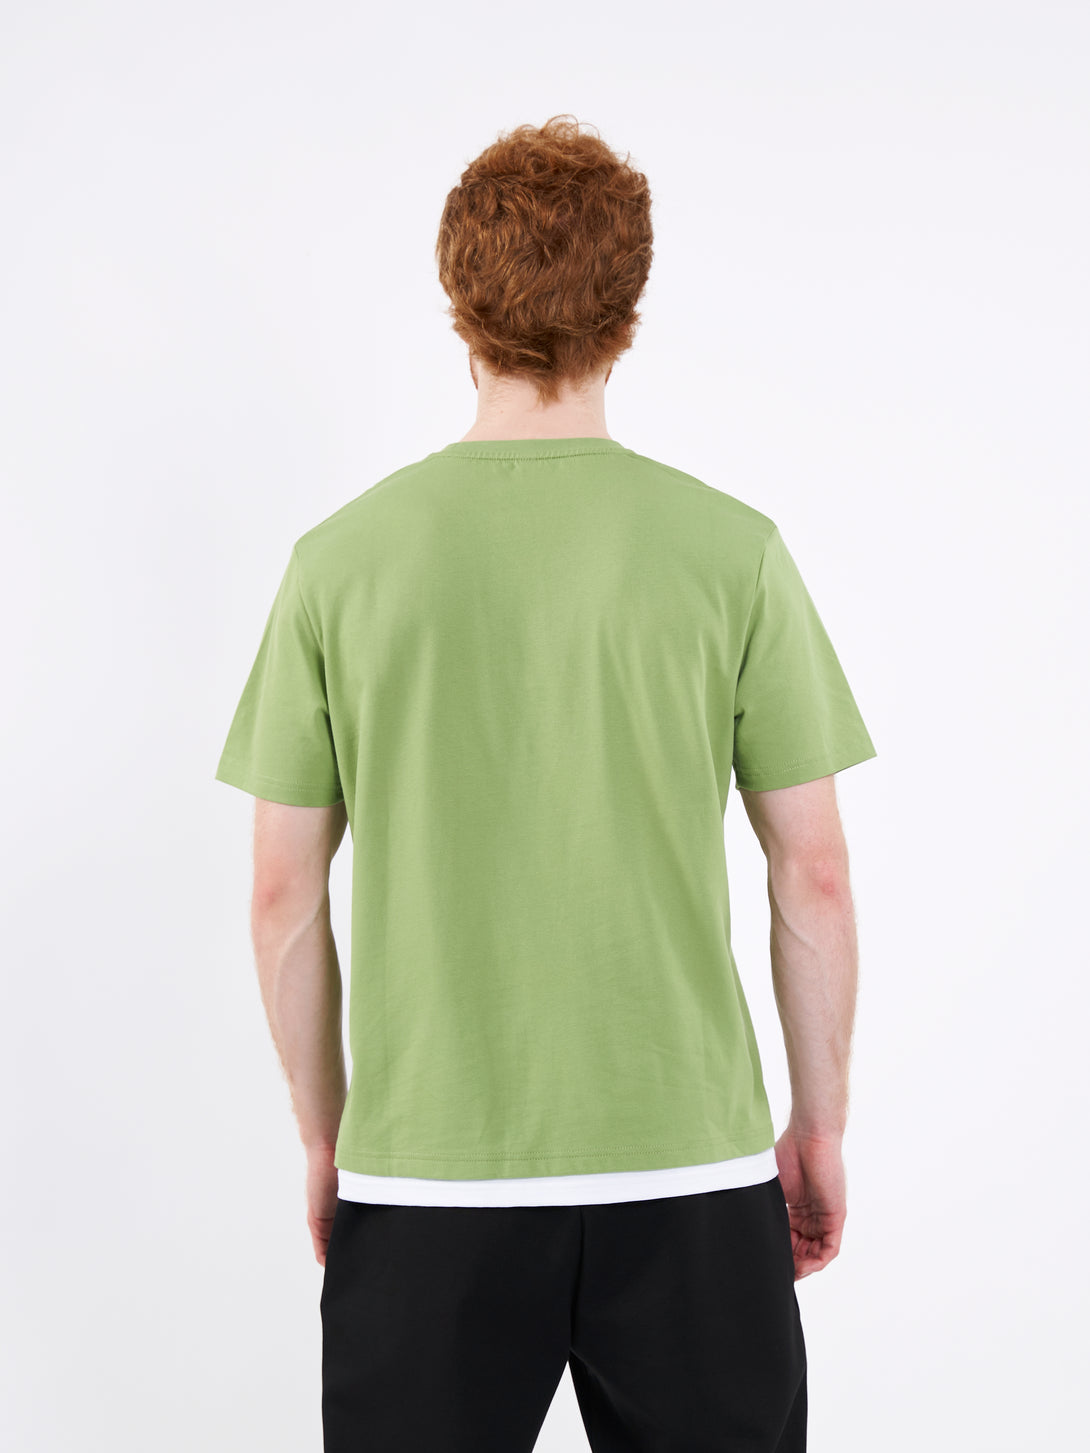 A Man Wearing Mist Green Color Men's Layered Heavyweight Crew Neck T-Shirt. Regular Fit